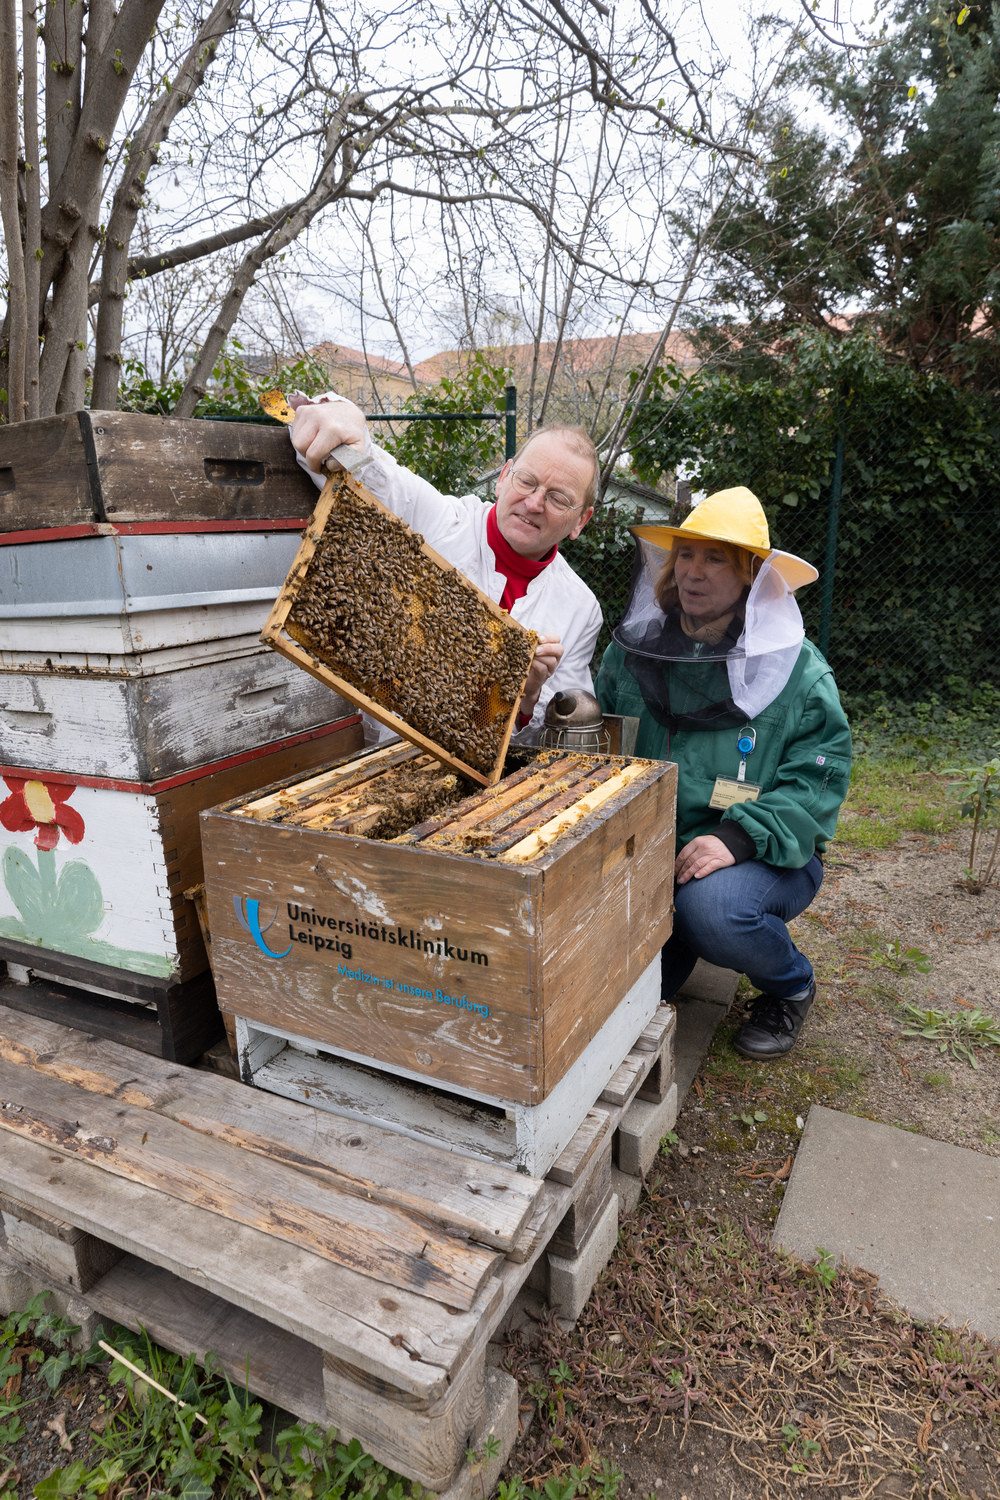 Dr. Michael Hardt (li.) betreut die Bienenstöcke. Er ist Leipziger Imker und Vorsitzender des Landesverbandes sächsischer Imker. Hardt stellt sicher, dass die Bienen gut versorgt sind. Er arbeitet dabei eng mit Bärbel Zimmermann (re.) zusammen, die die UKL-eigene Gärtnerei leitet.